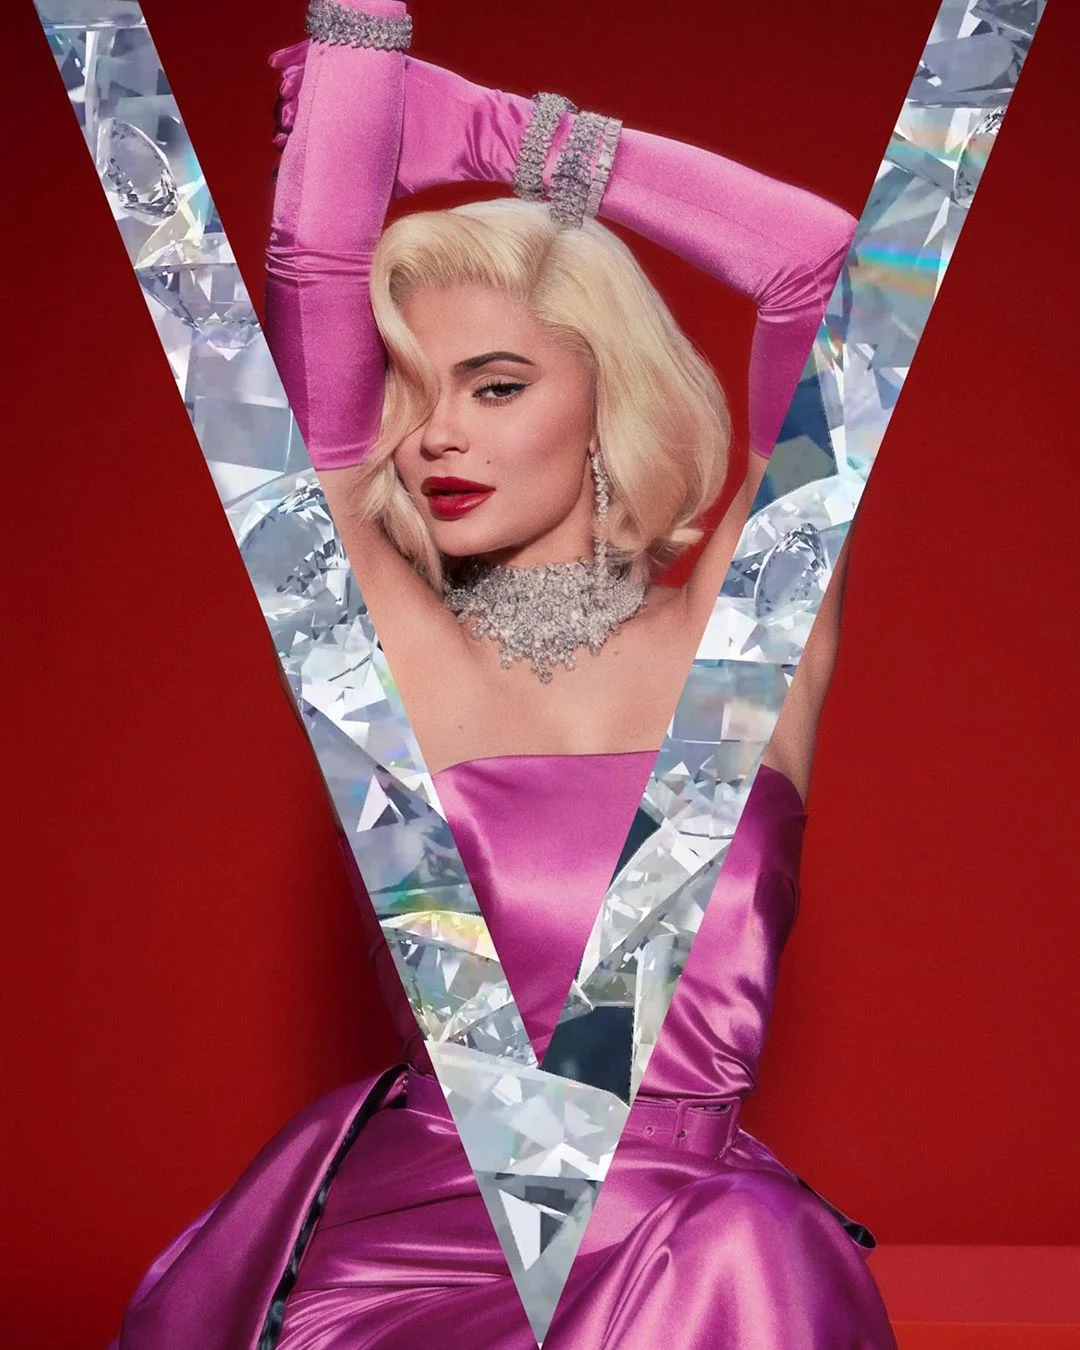 Кайли Дженнер украсила обложку модного журнала в культовом образе Мэрилин Монро - фото 456288